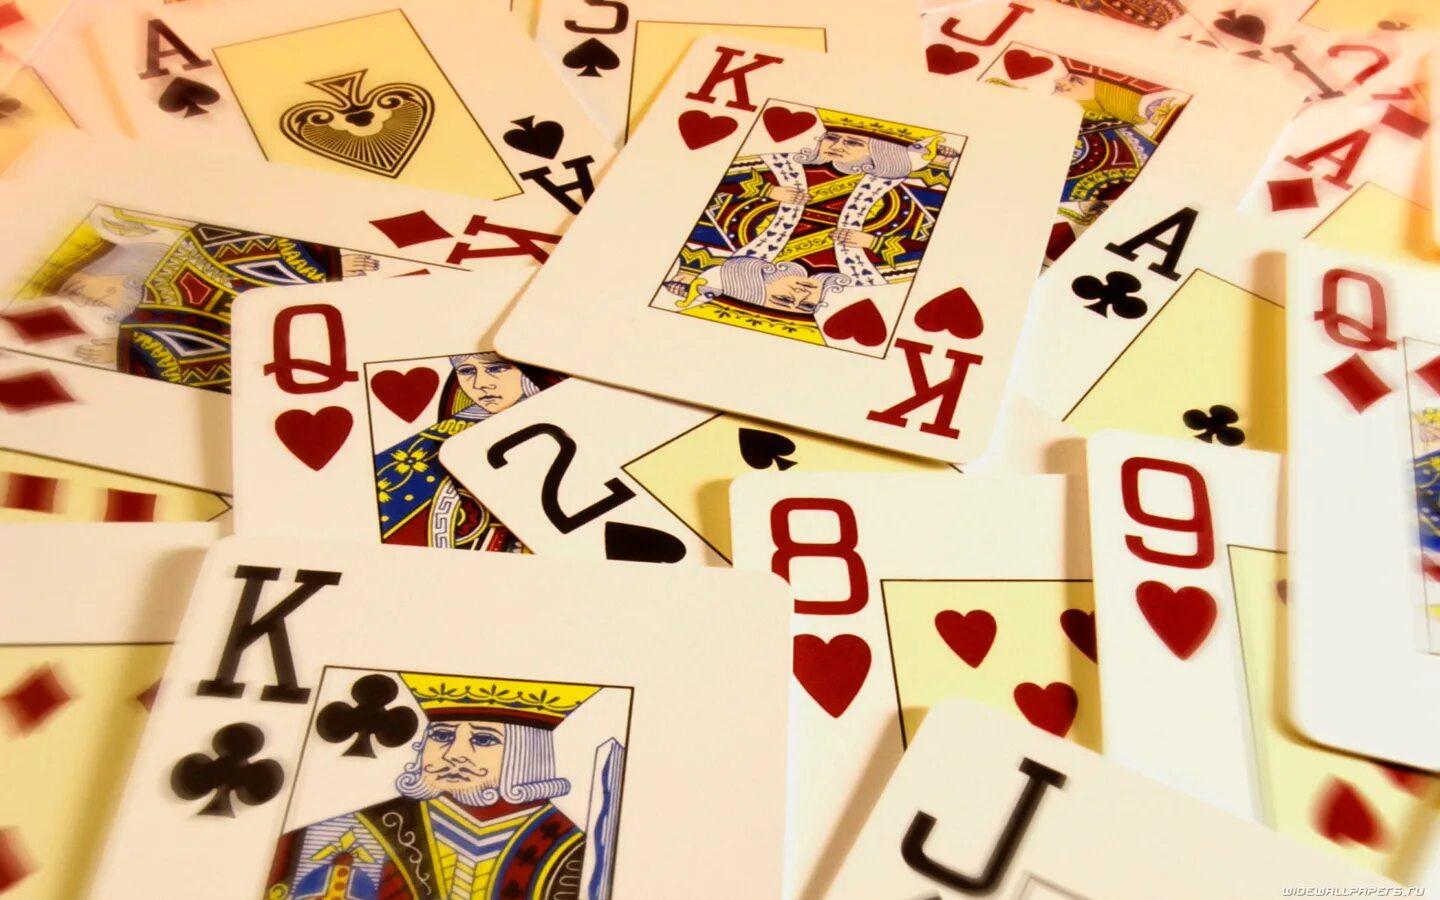 Карты на стол. Игральные карты. Азартная карточная игра. Игральные карты на столе. Колода карт в руке.